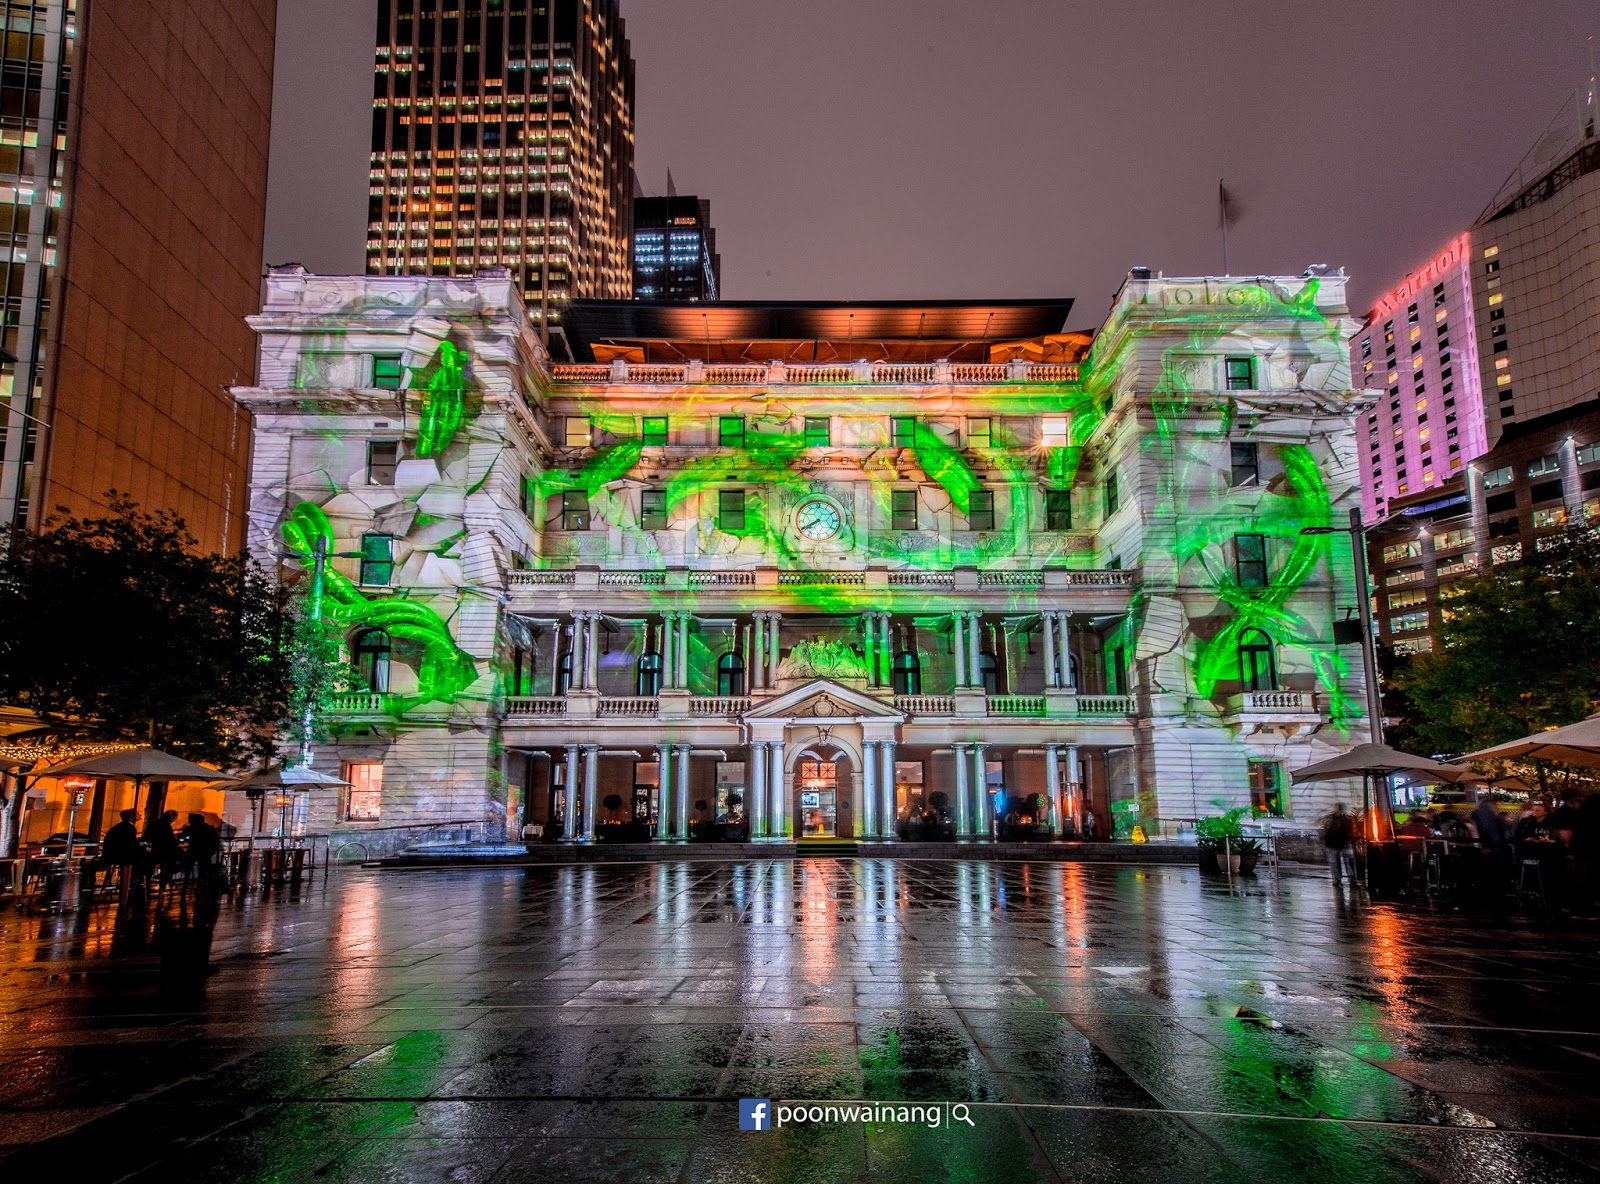 全球最大光影音樂藝術盛會 悉尼燈光音樂節